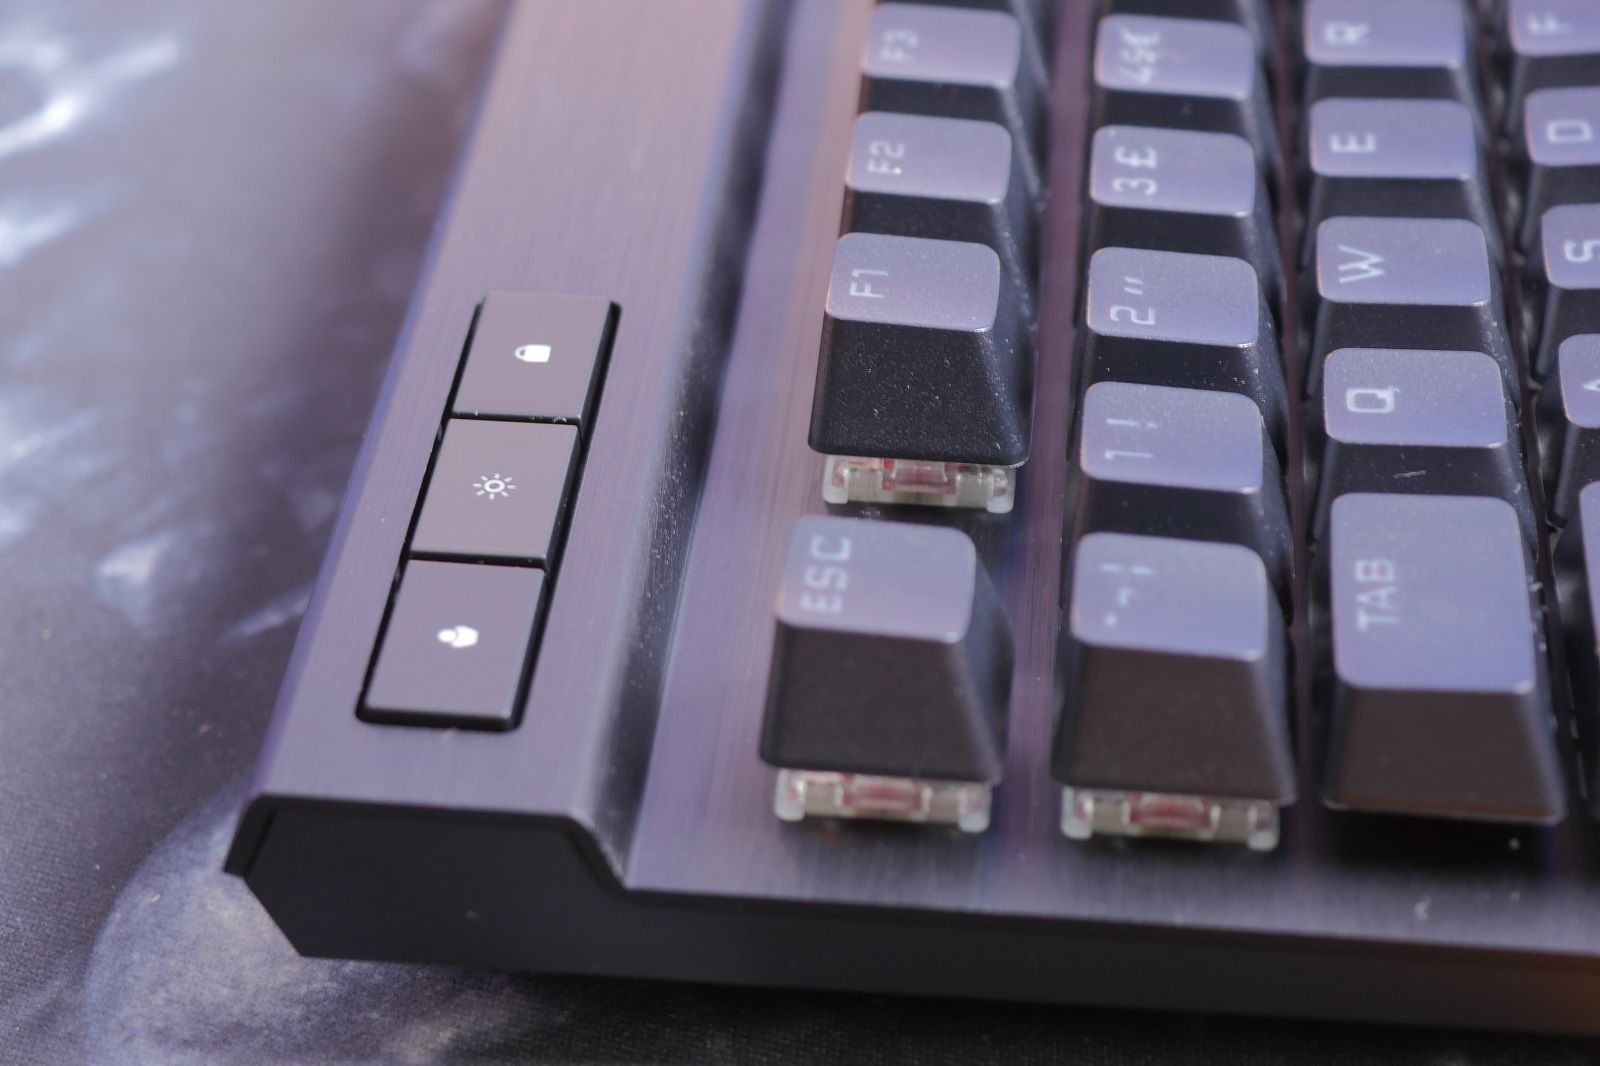 Corsair K70 RGB Pro keyboard review photo 13